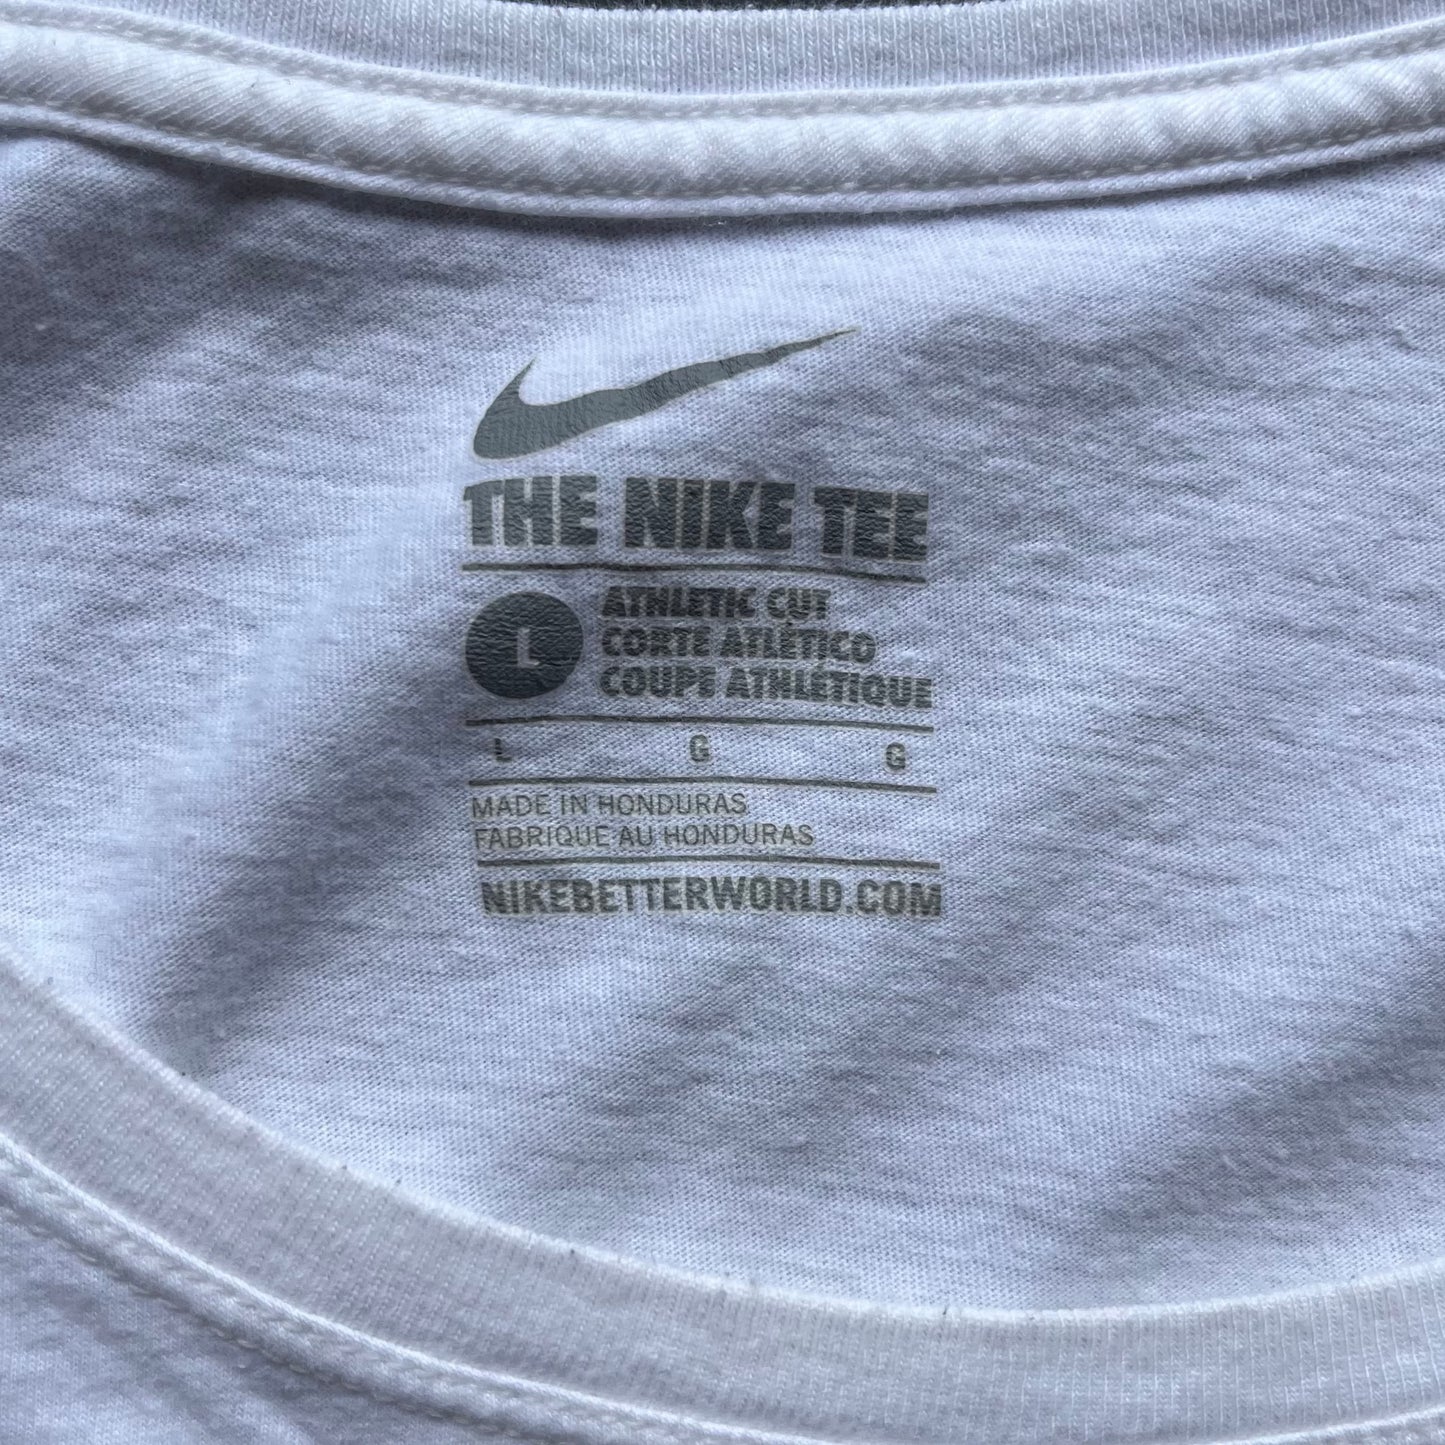 University of Tennessee - Nike Tee (Large)